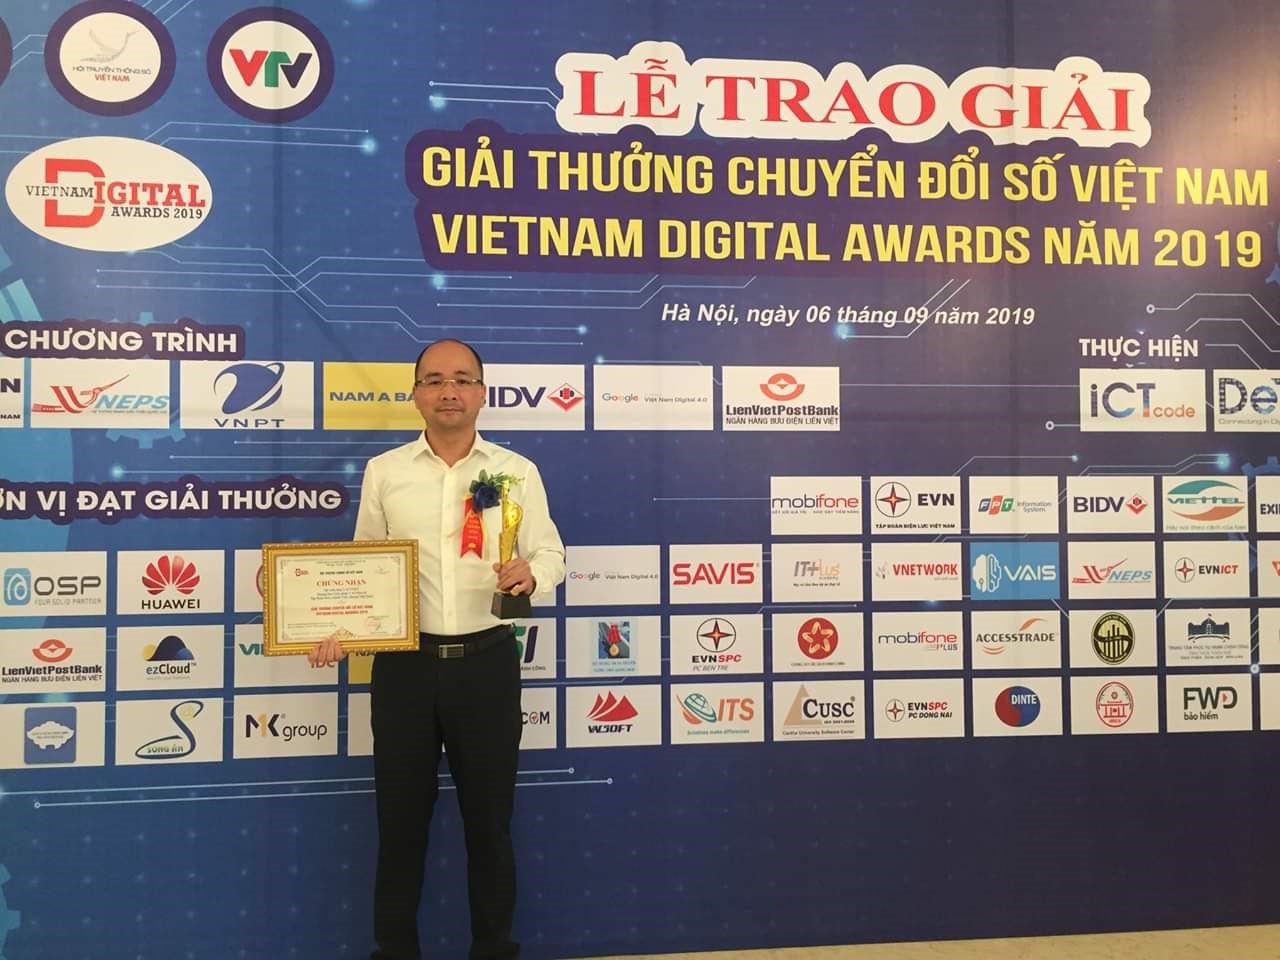 Hệ sinh thái Y tế VNPT nhận Giải thưởng Chuyển đổi số Việt Nam